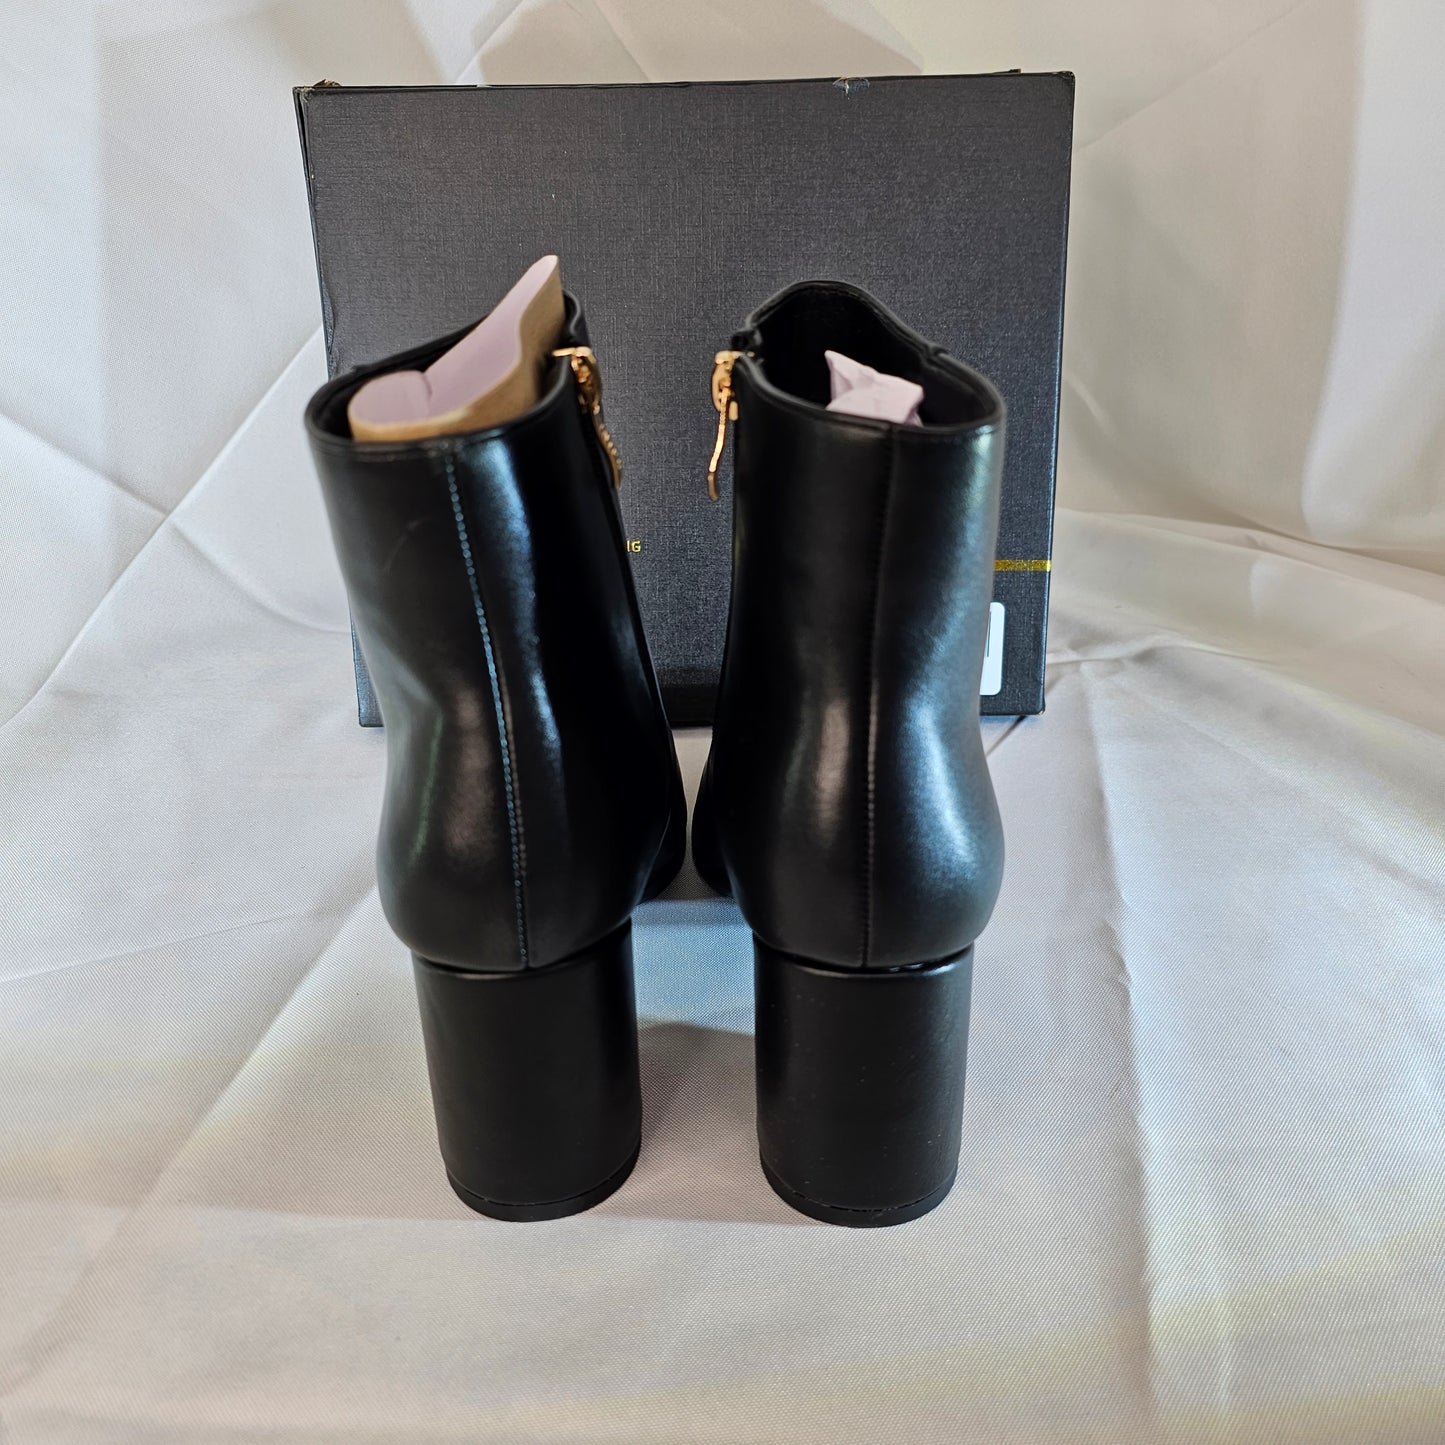 Women's Shoes Black US 8.5 Unique From Beginning IDIFU BI3 Toni - DQ Distribution